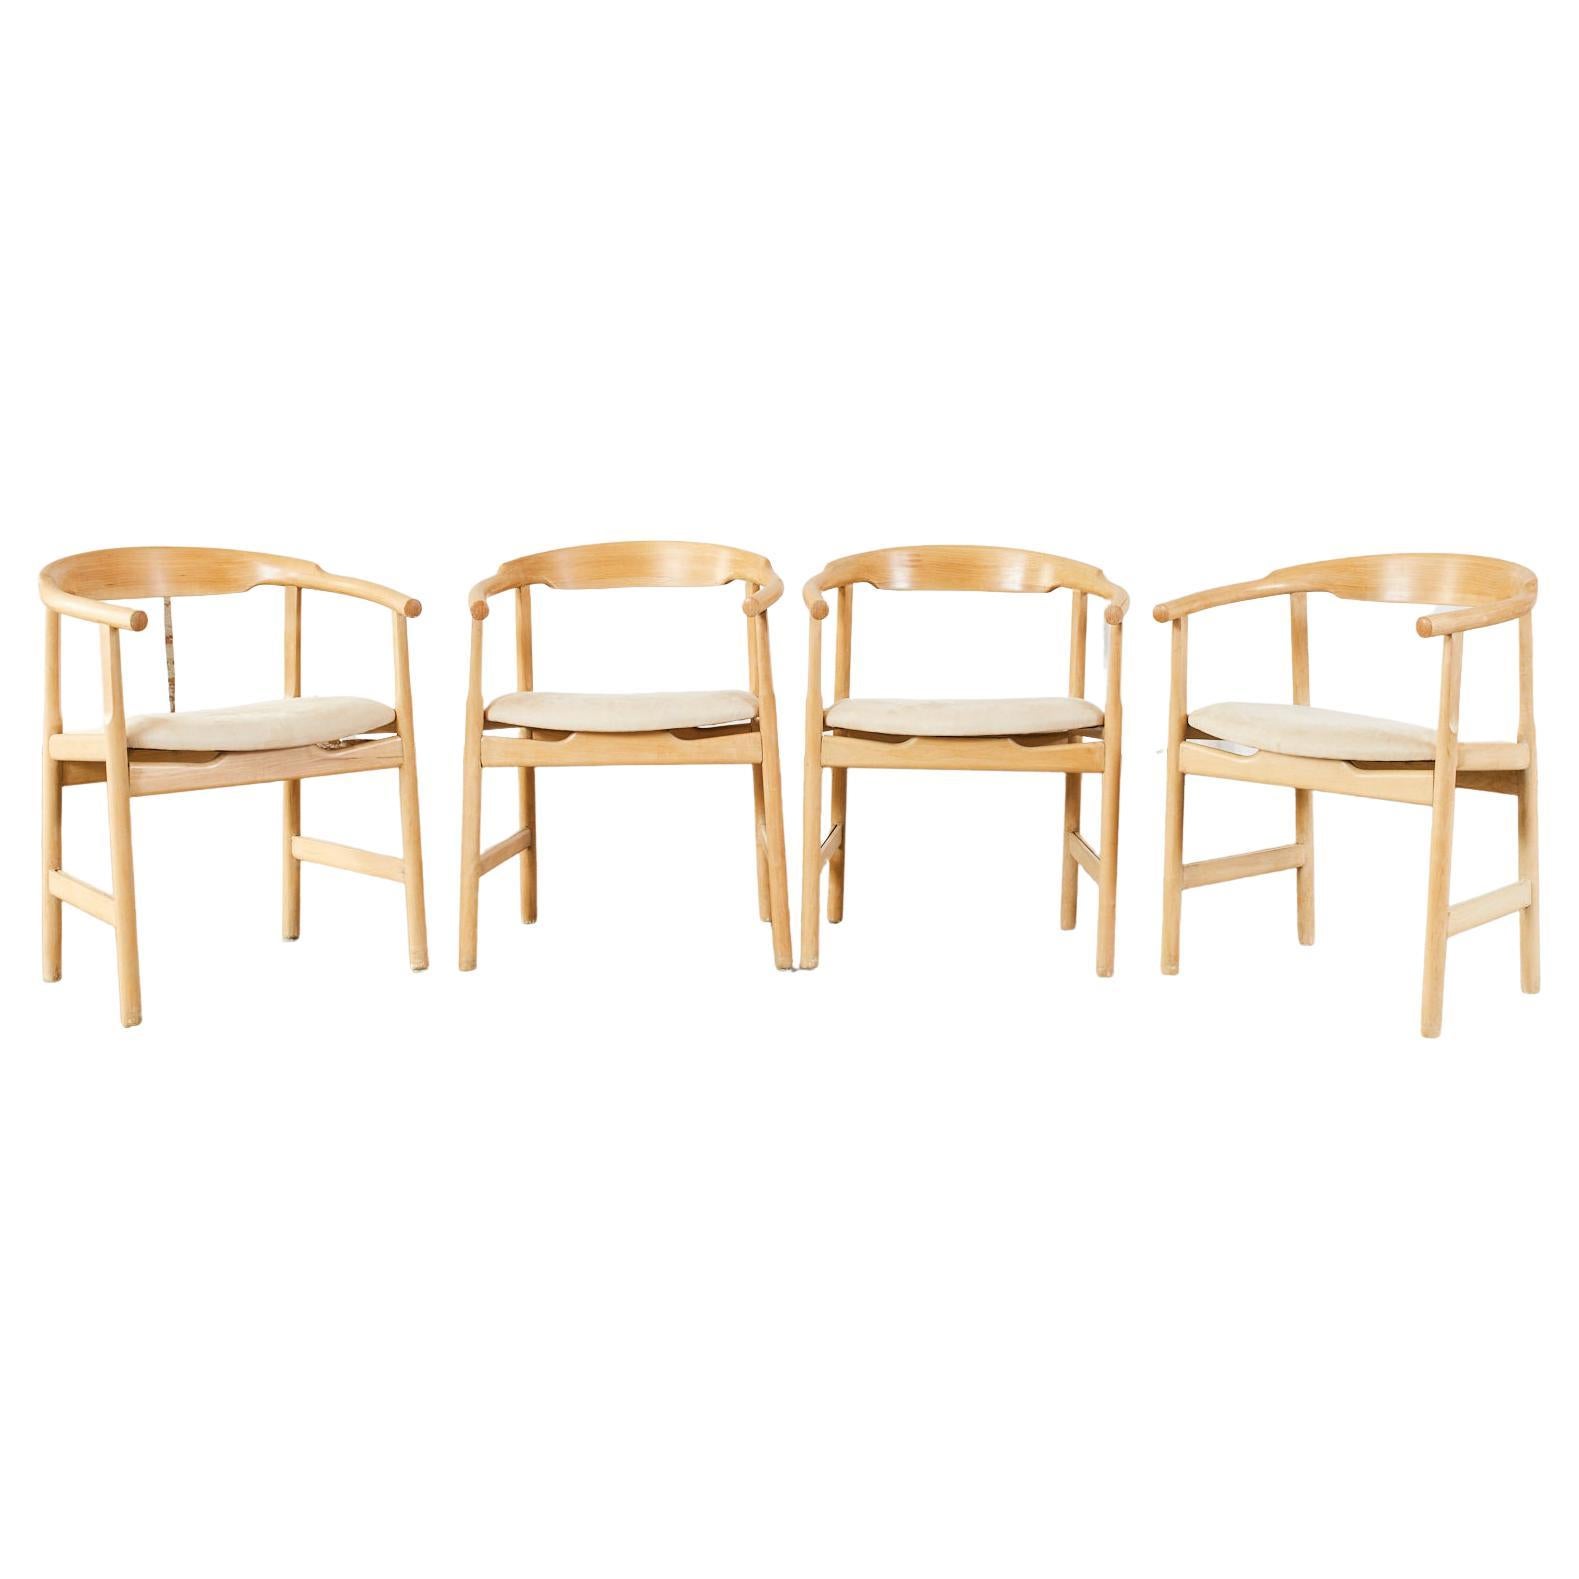 Satz von vier Sesseln aus Birkenholz im dänischen Stil der Jahrhundertmitte